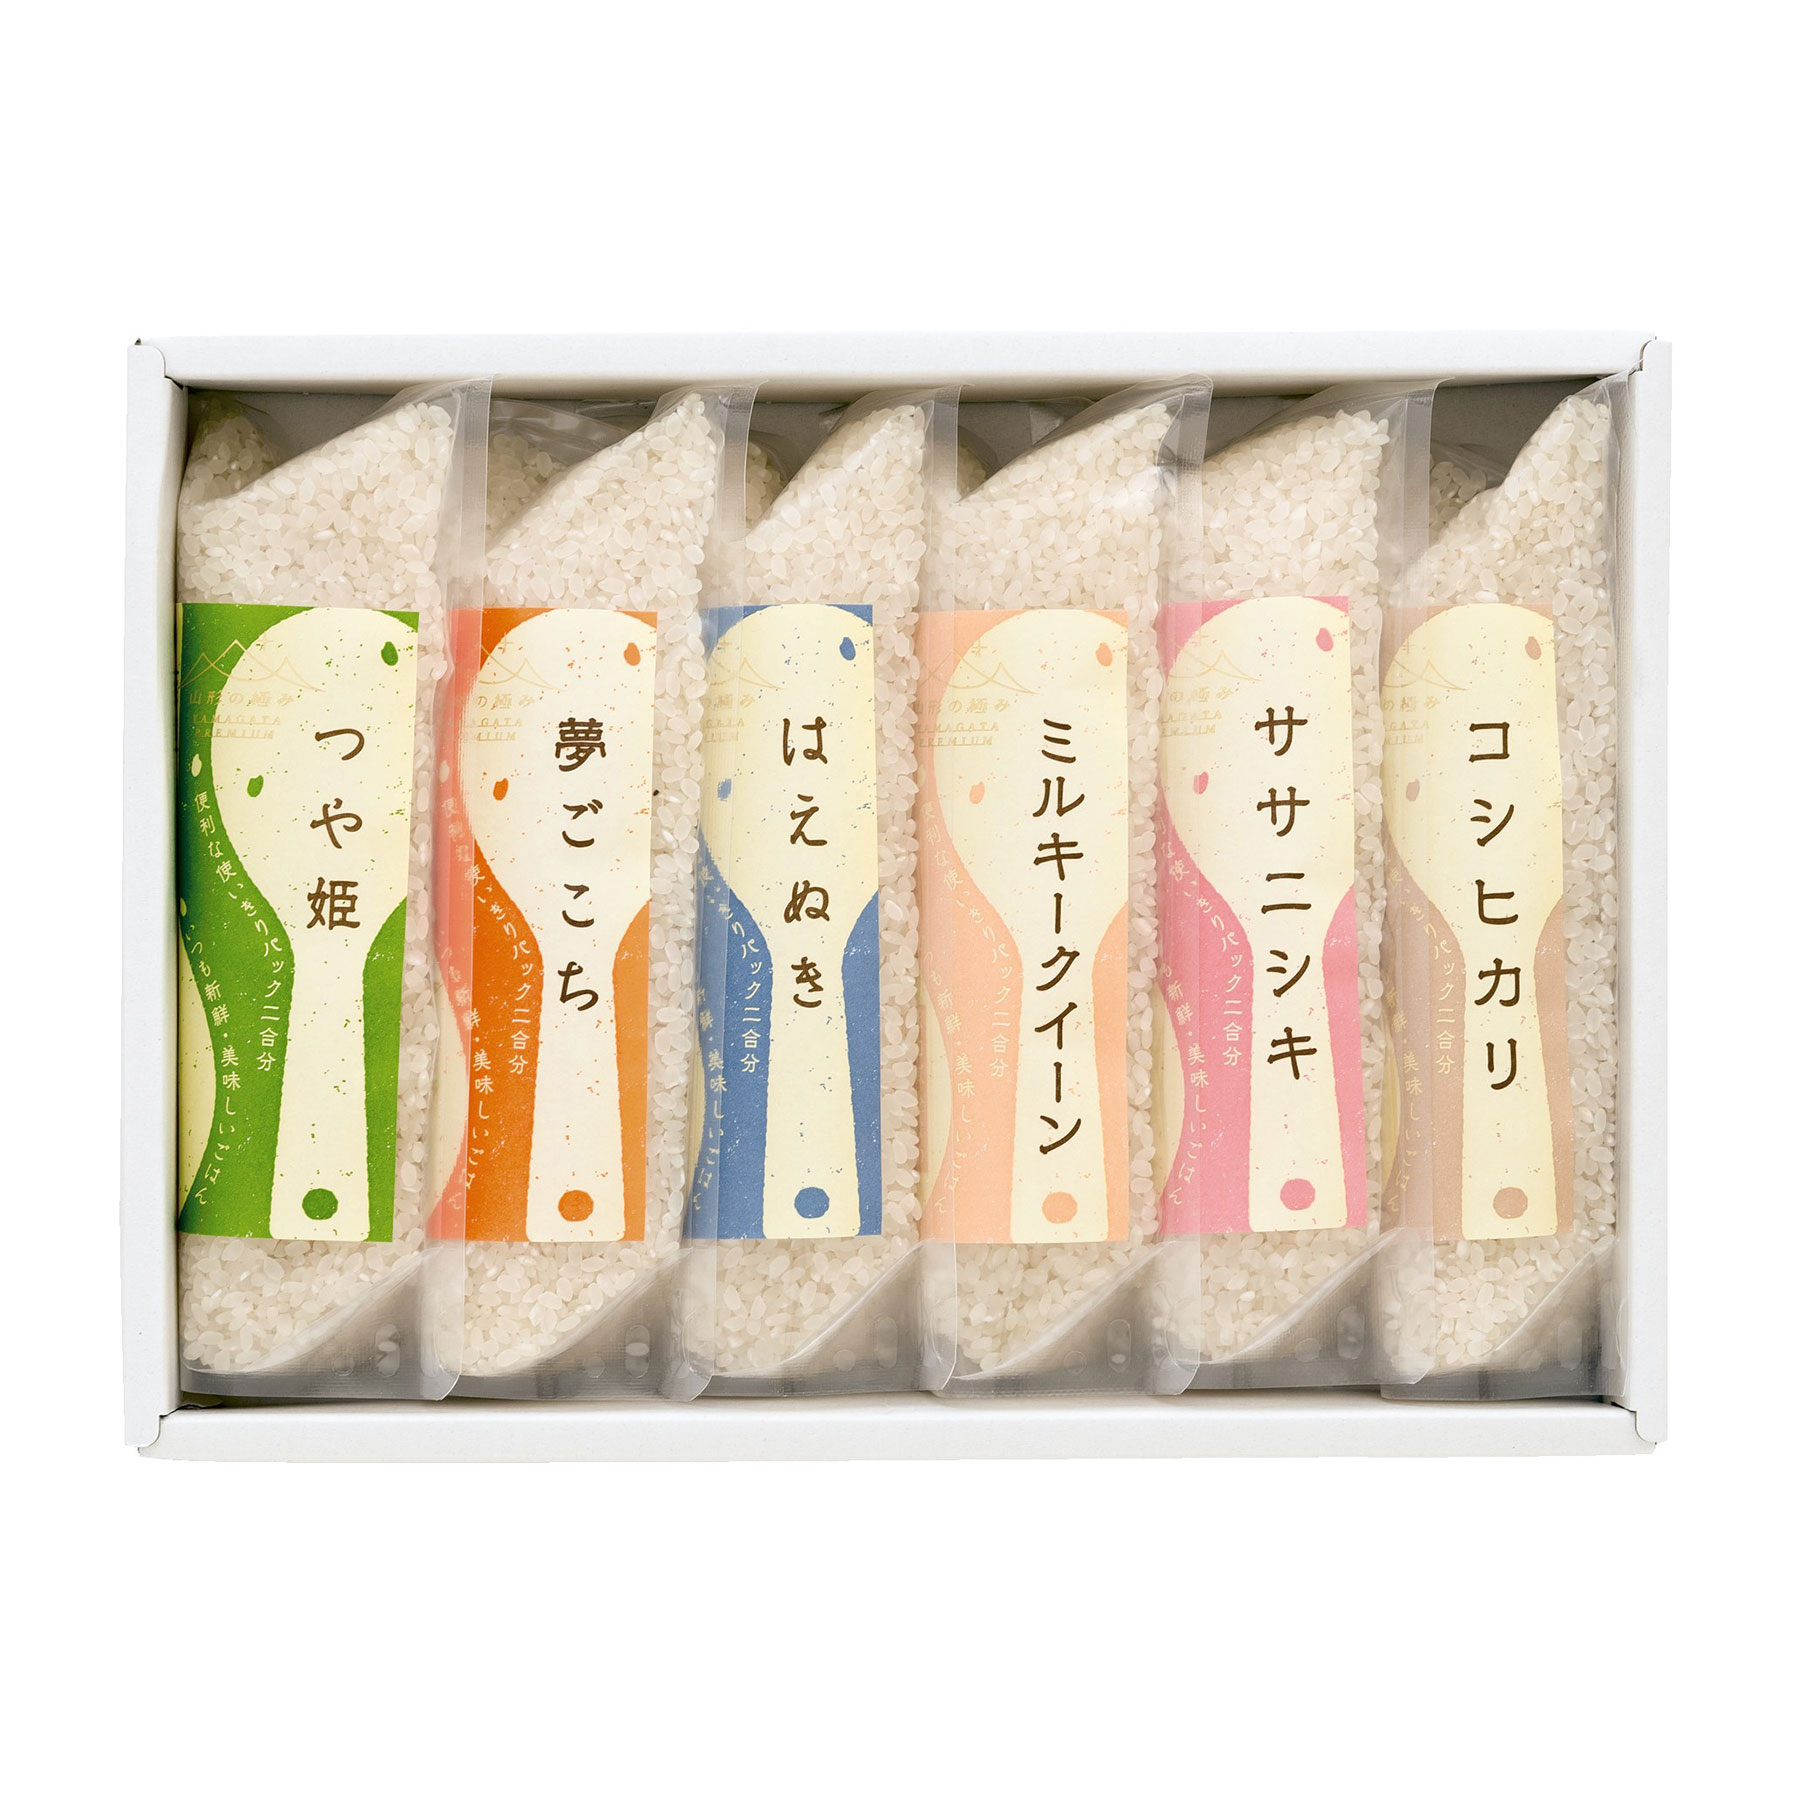 佐藤ファーム お米食べくらべセット6種